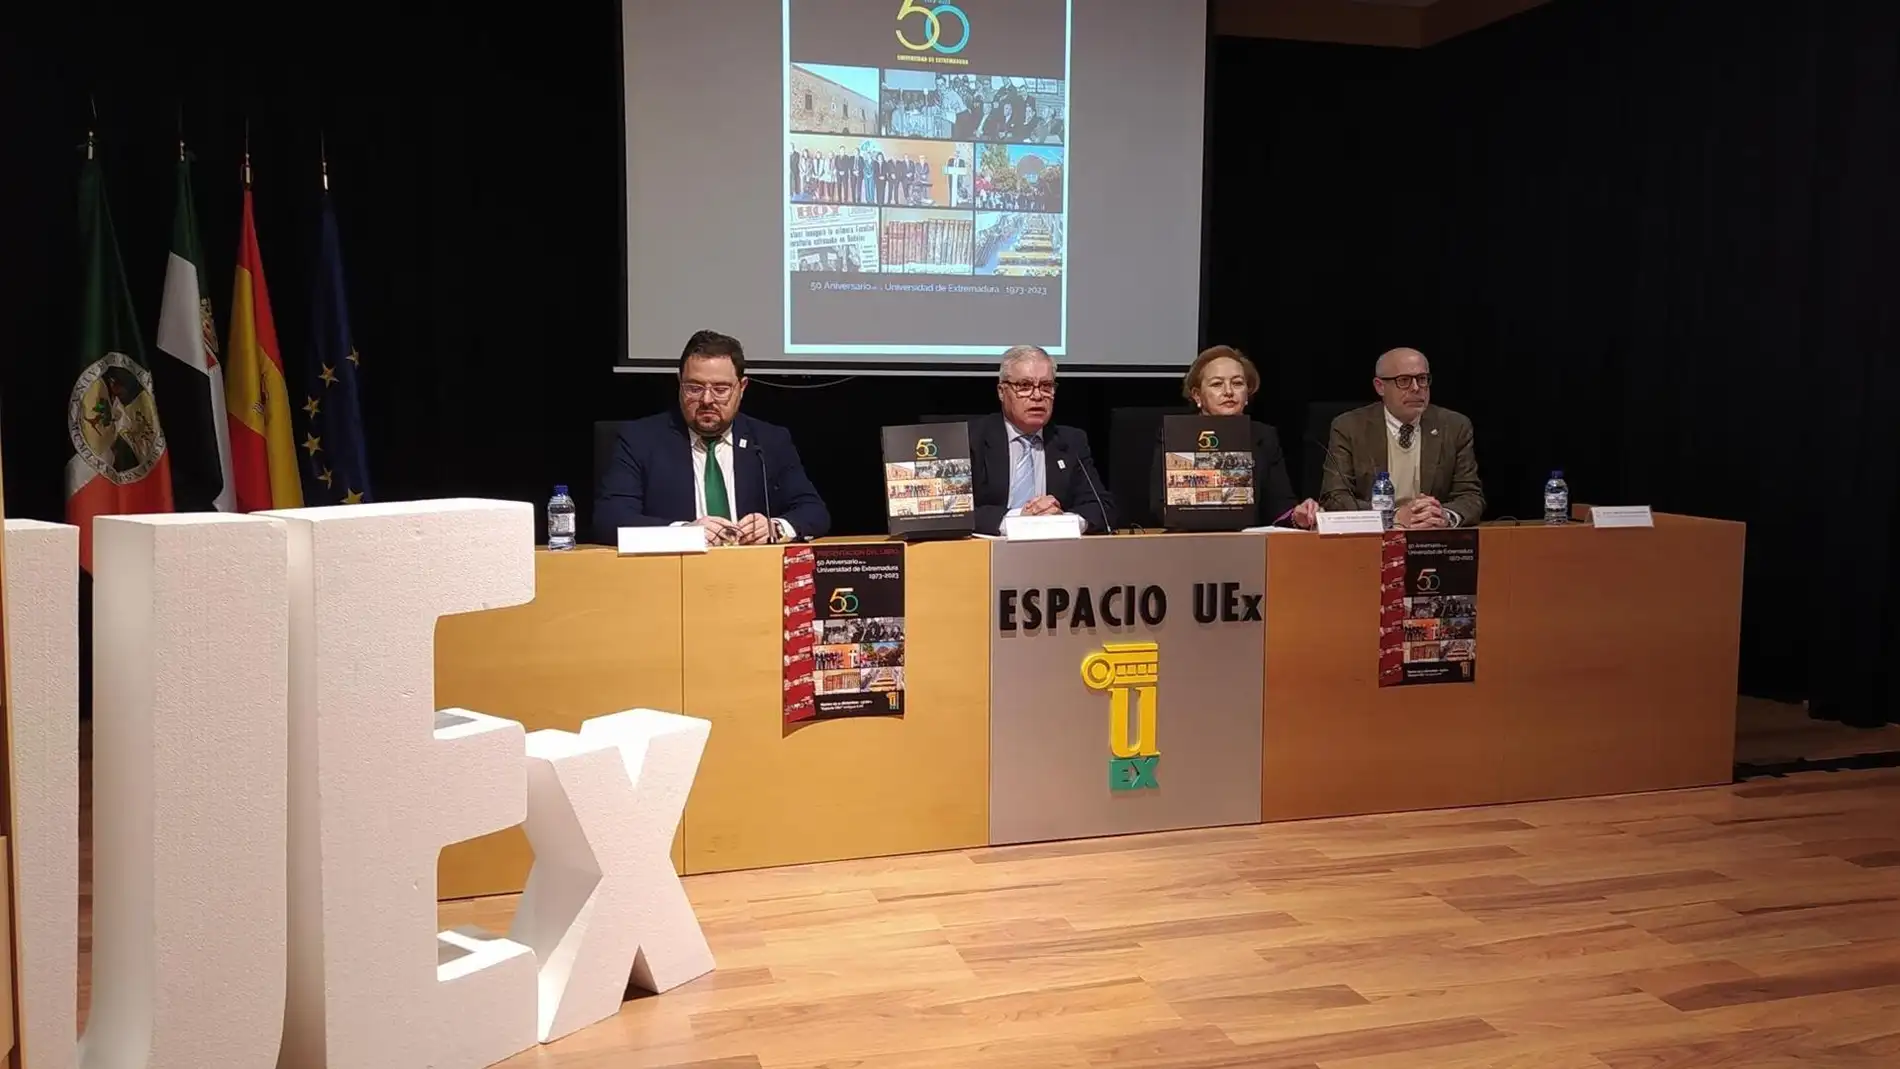 La Universidad de Extremadura ya cuenta con un libro que recoge los principales hitos de sus 50 años de existencia